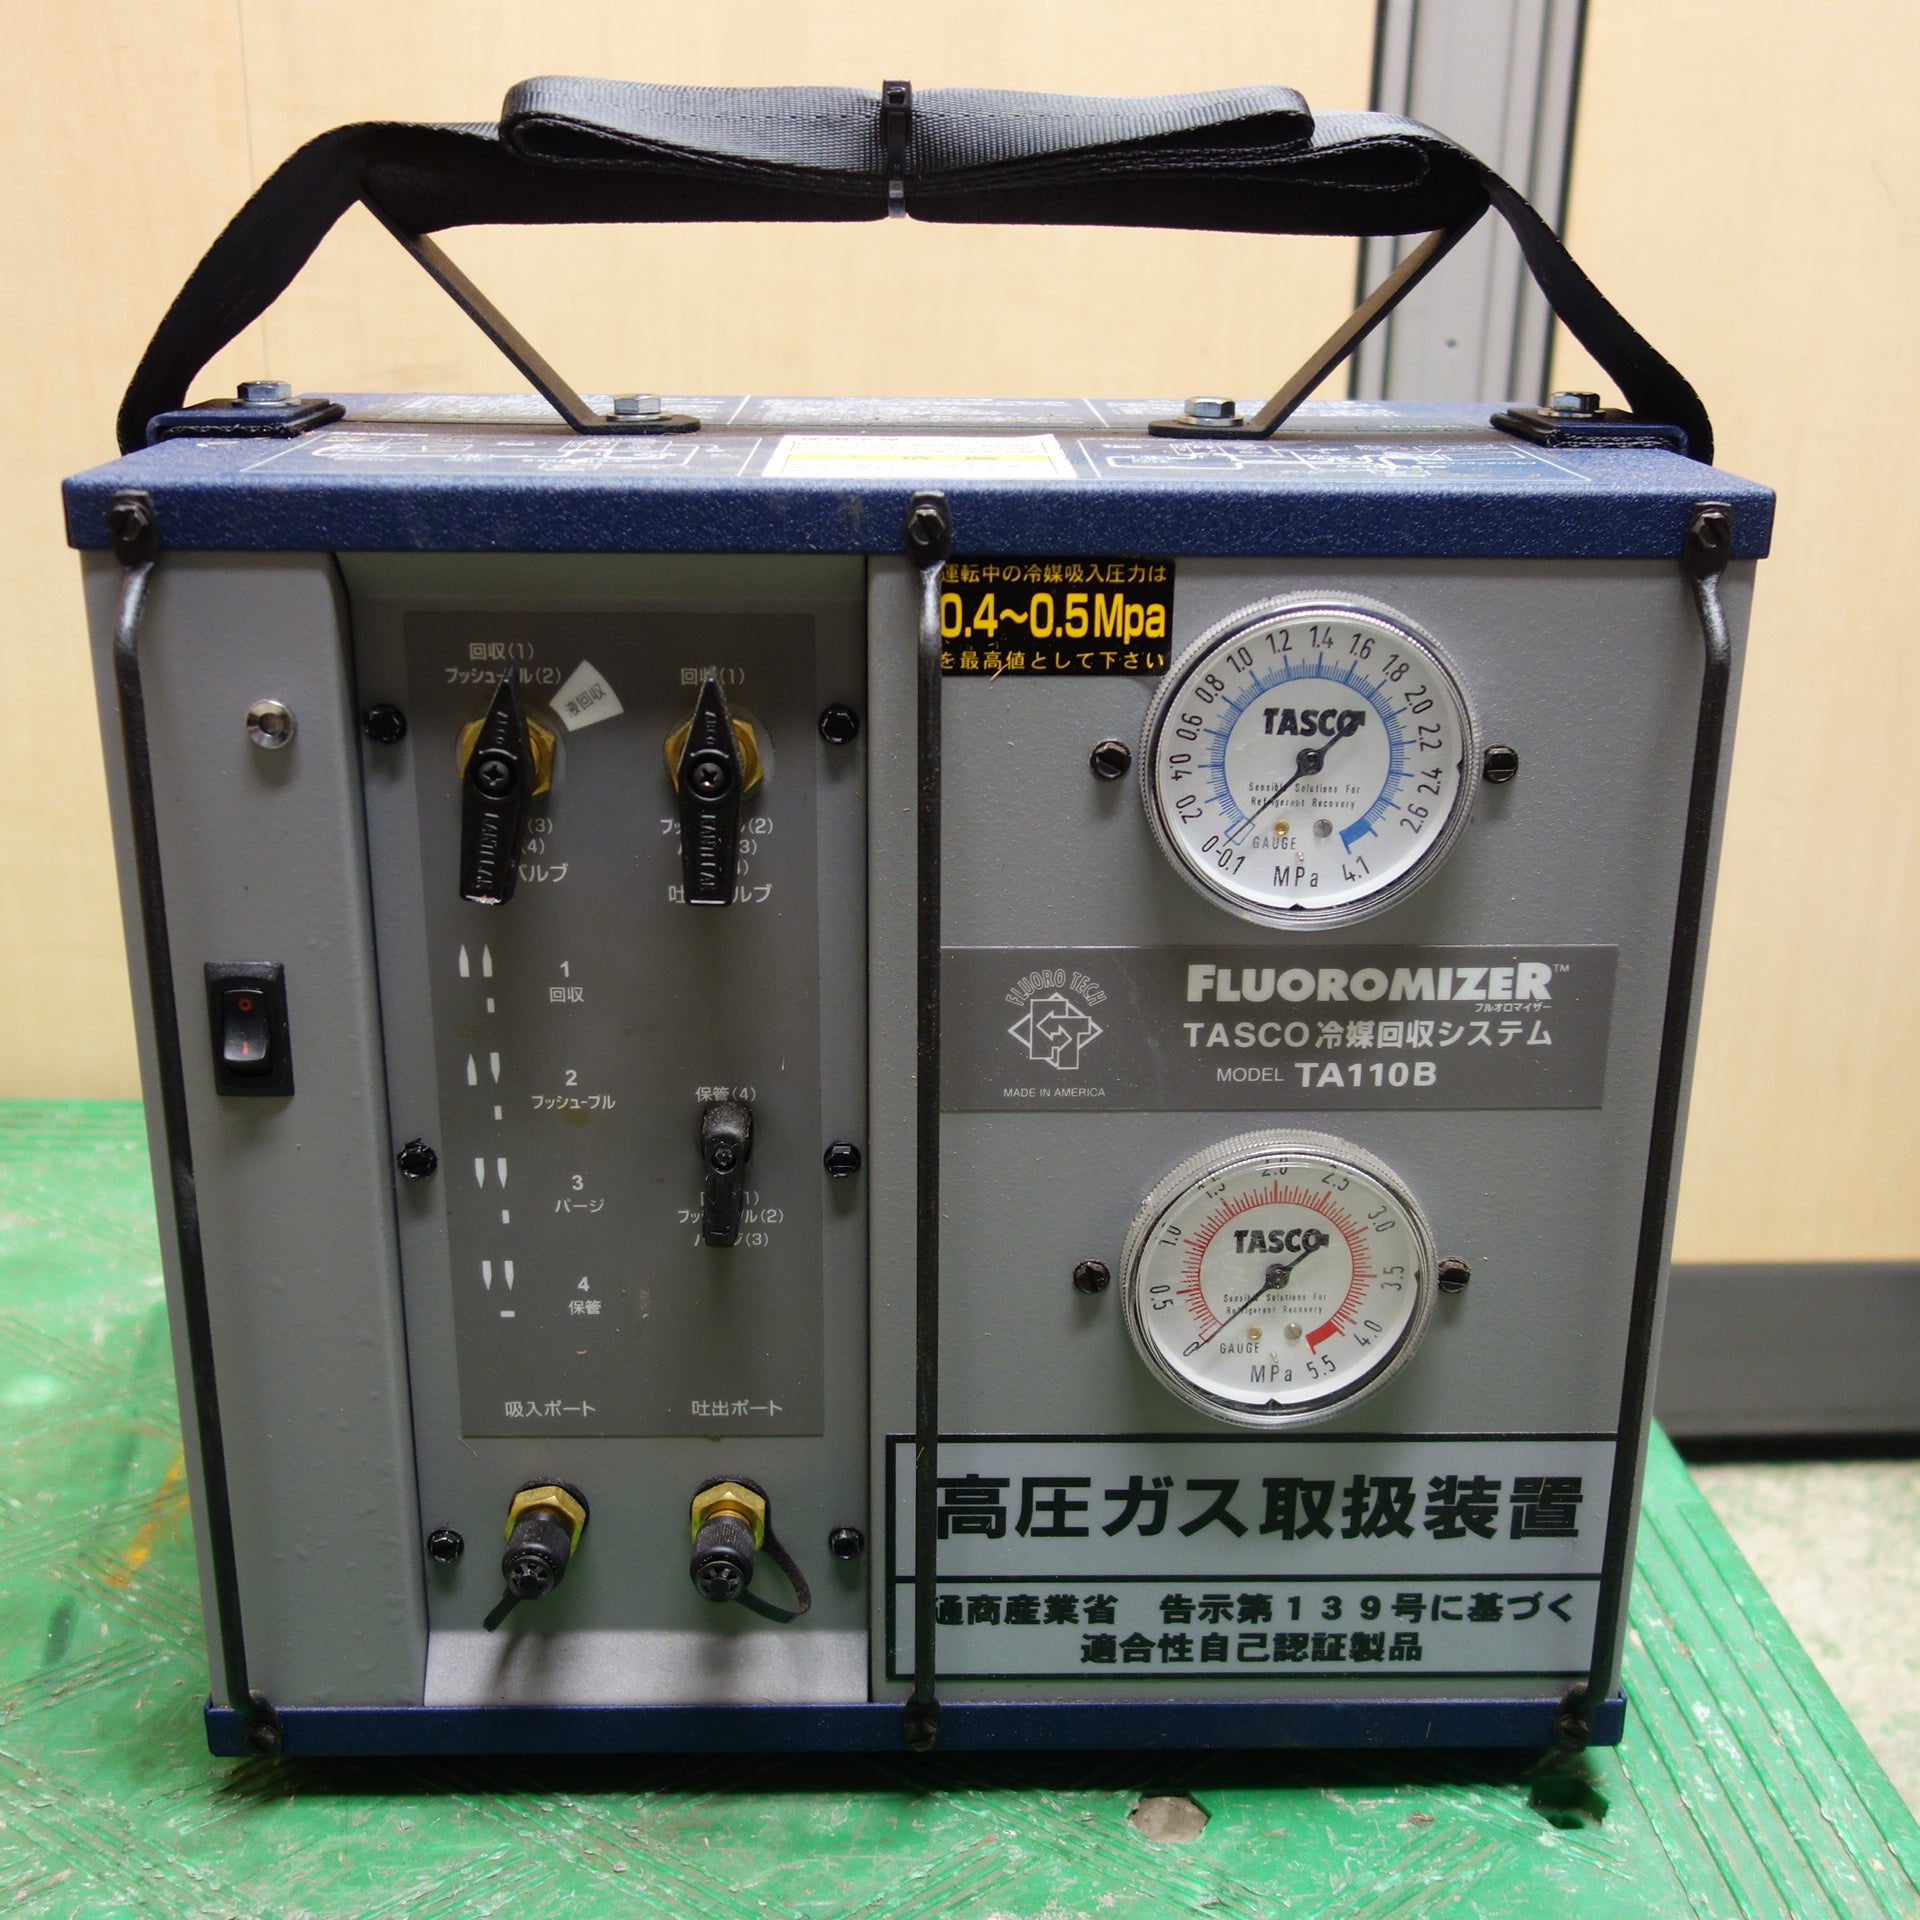 タスコ TASCO フルオロカーボン 冷媒回収装置 TA-110B - 冷暖房、空調